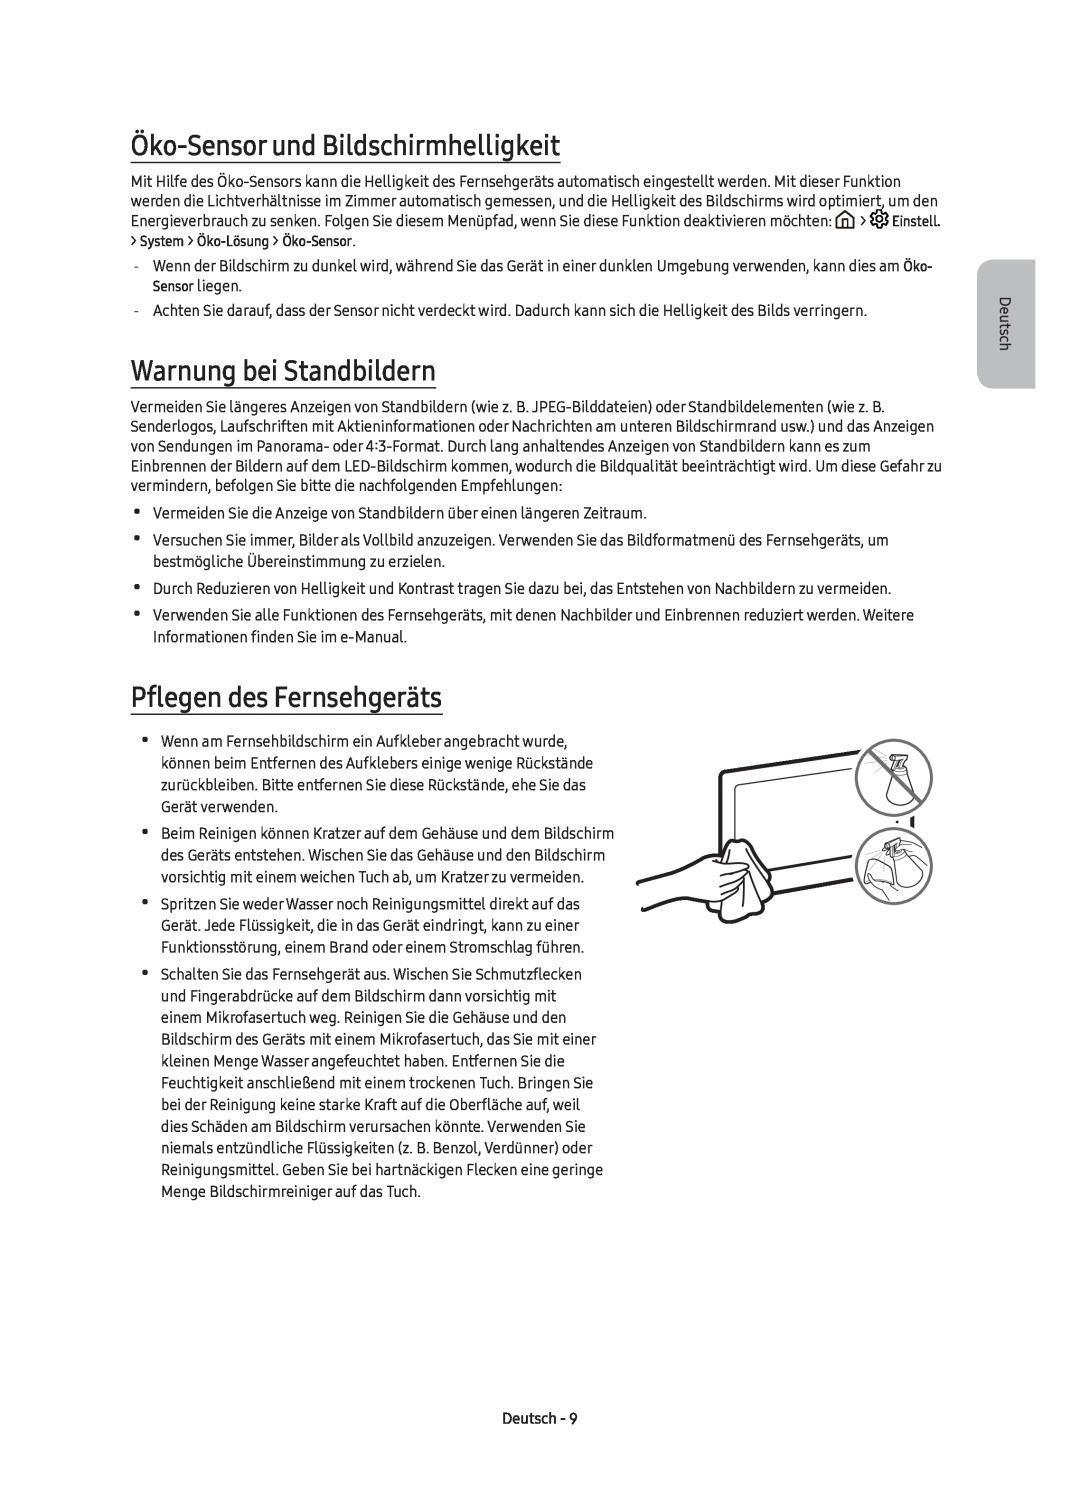 Samsung UE43KS7580UXZG Öko-Sensor und Bildschirmhelligkeit, Warnung bei Standbildern, Pflegen des Fernsehgeräts, Deutsch 